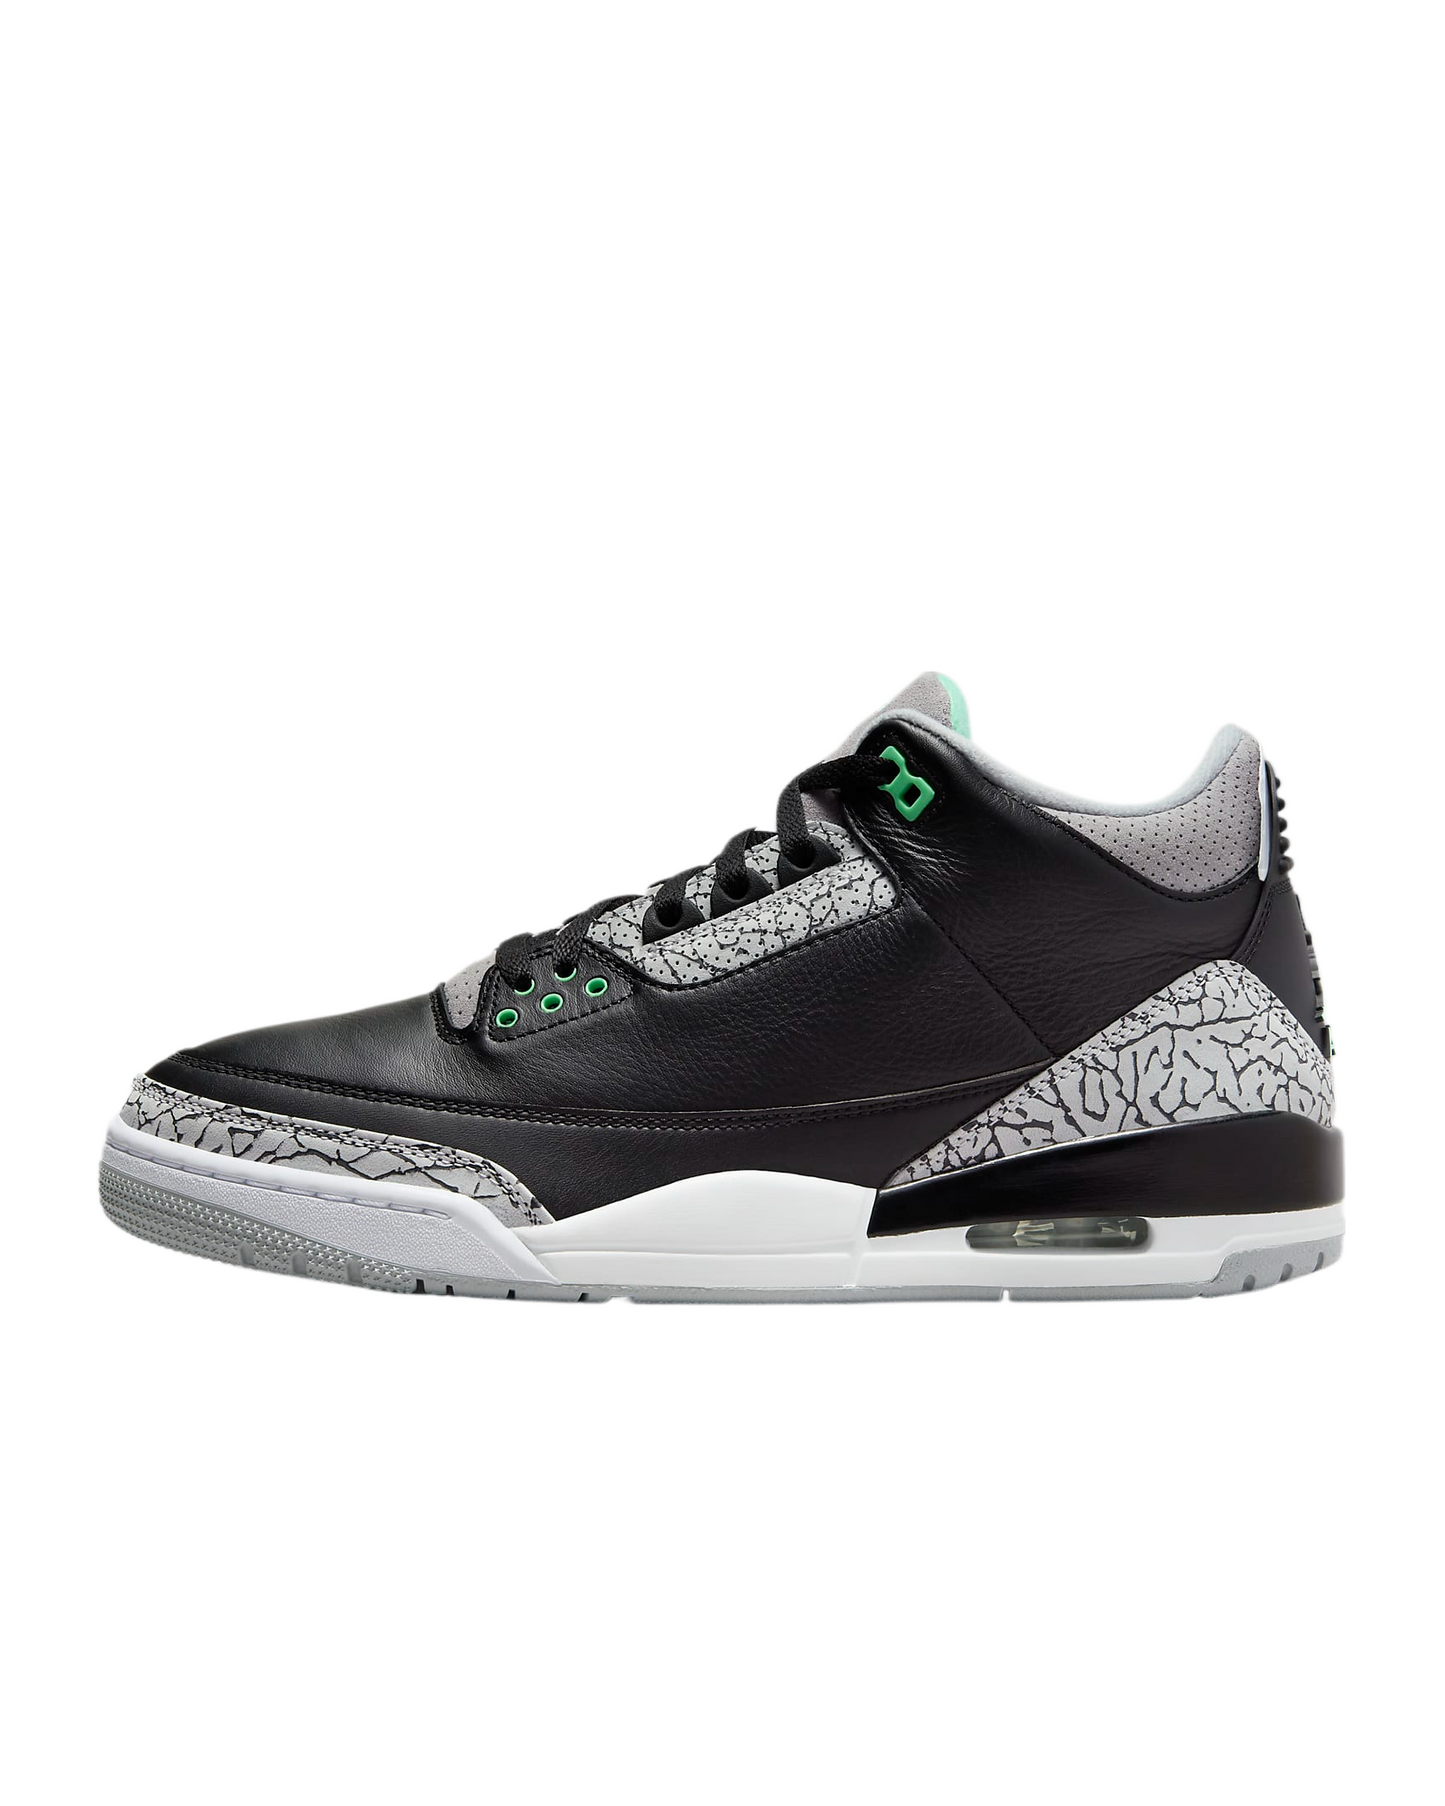 Air Jordan Men 3 Retro Black / Green Glow-Wolf Grey CT8532-031